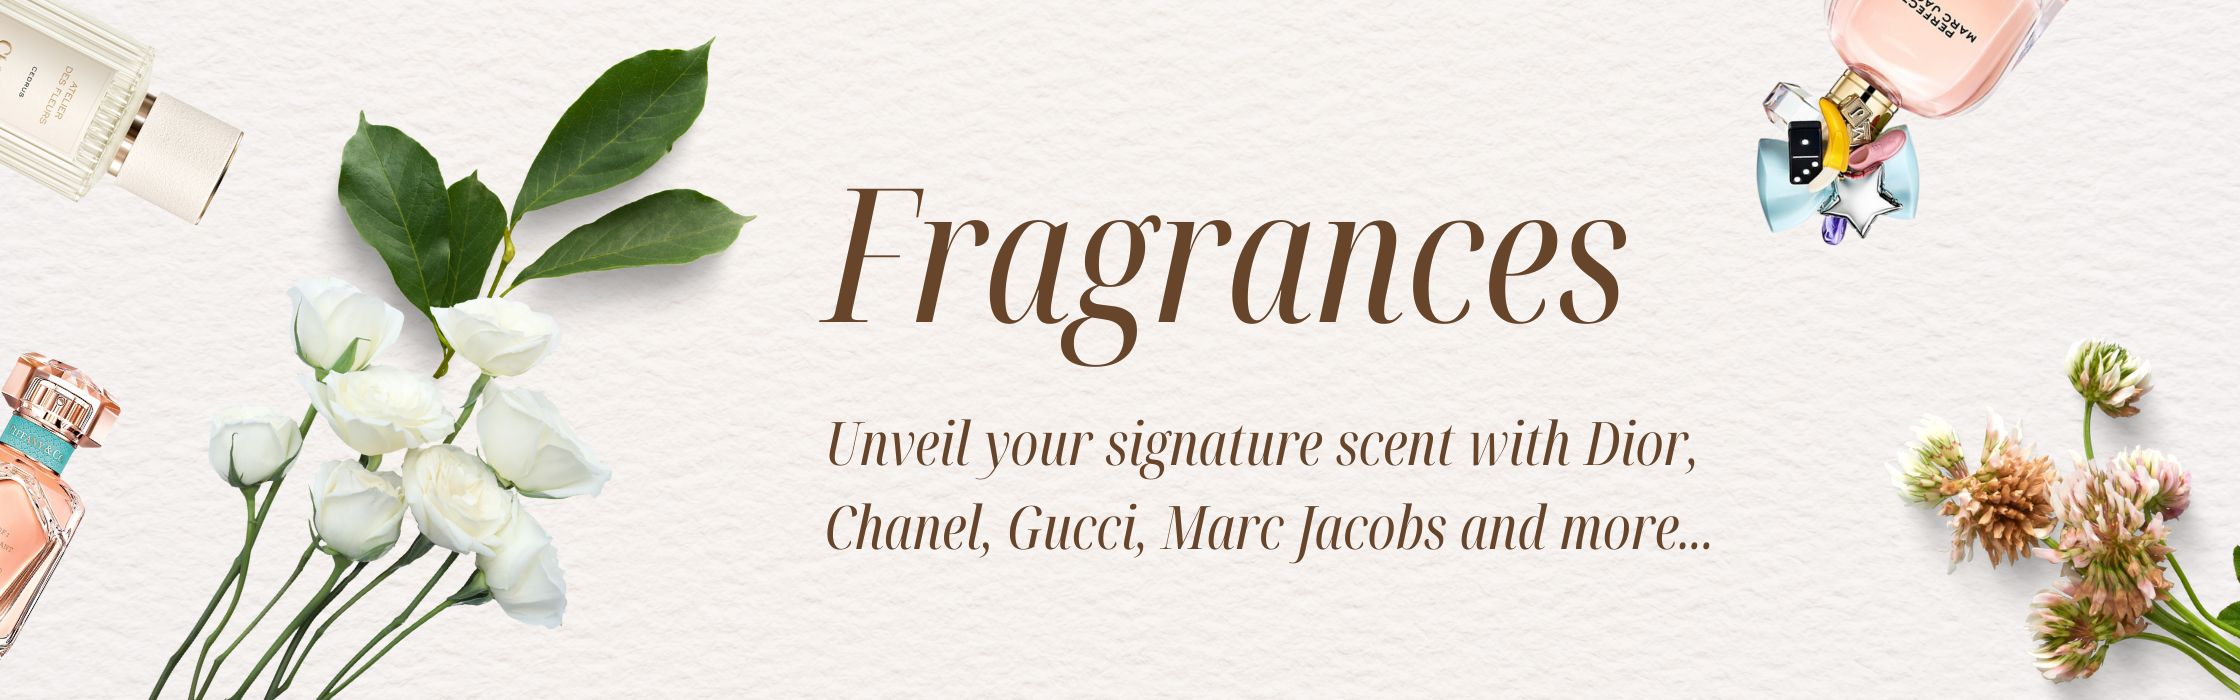 Fragrances Banner